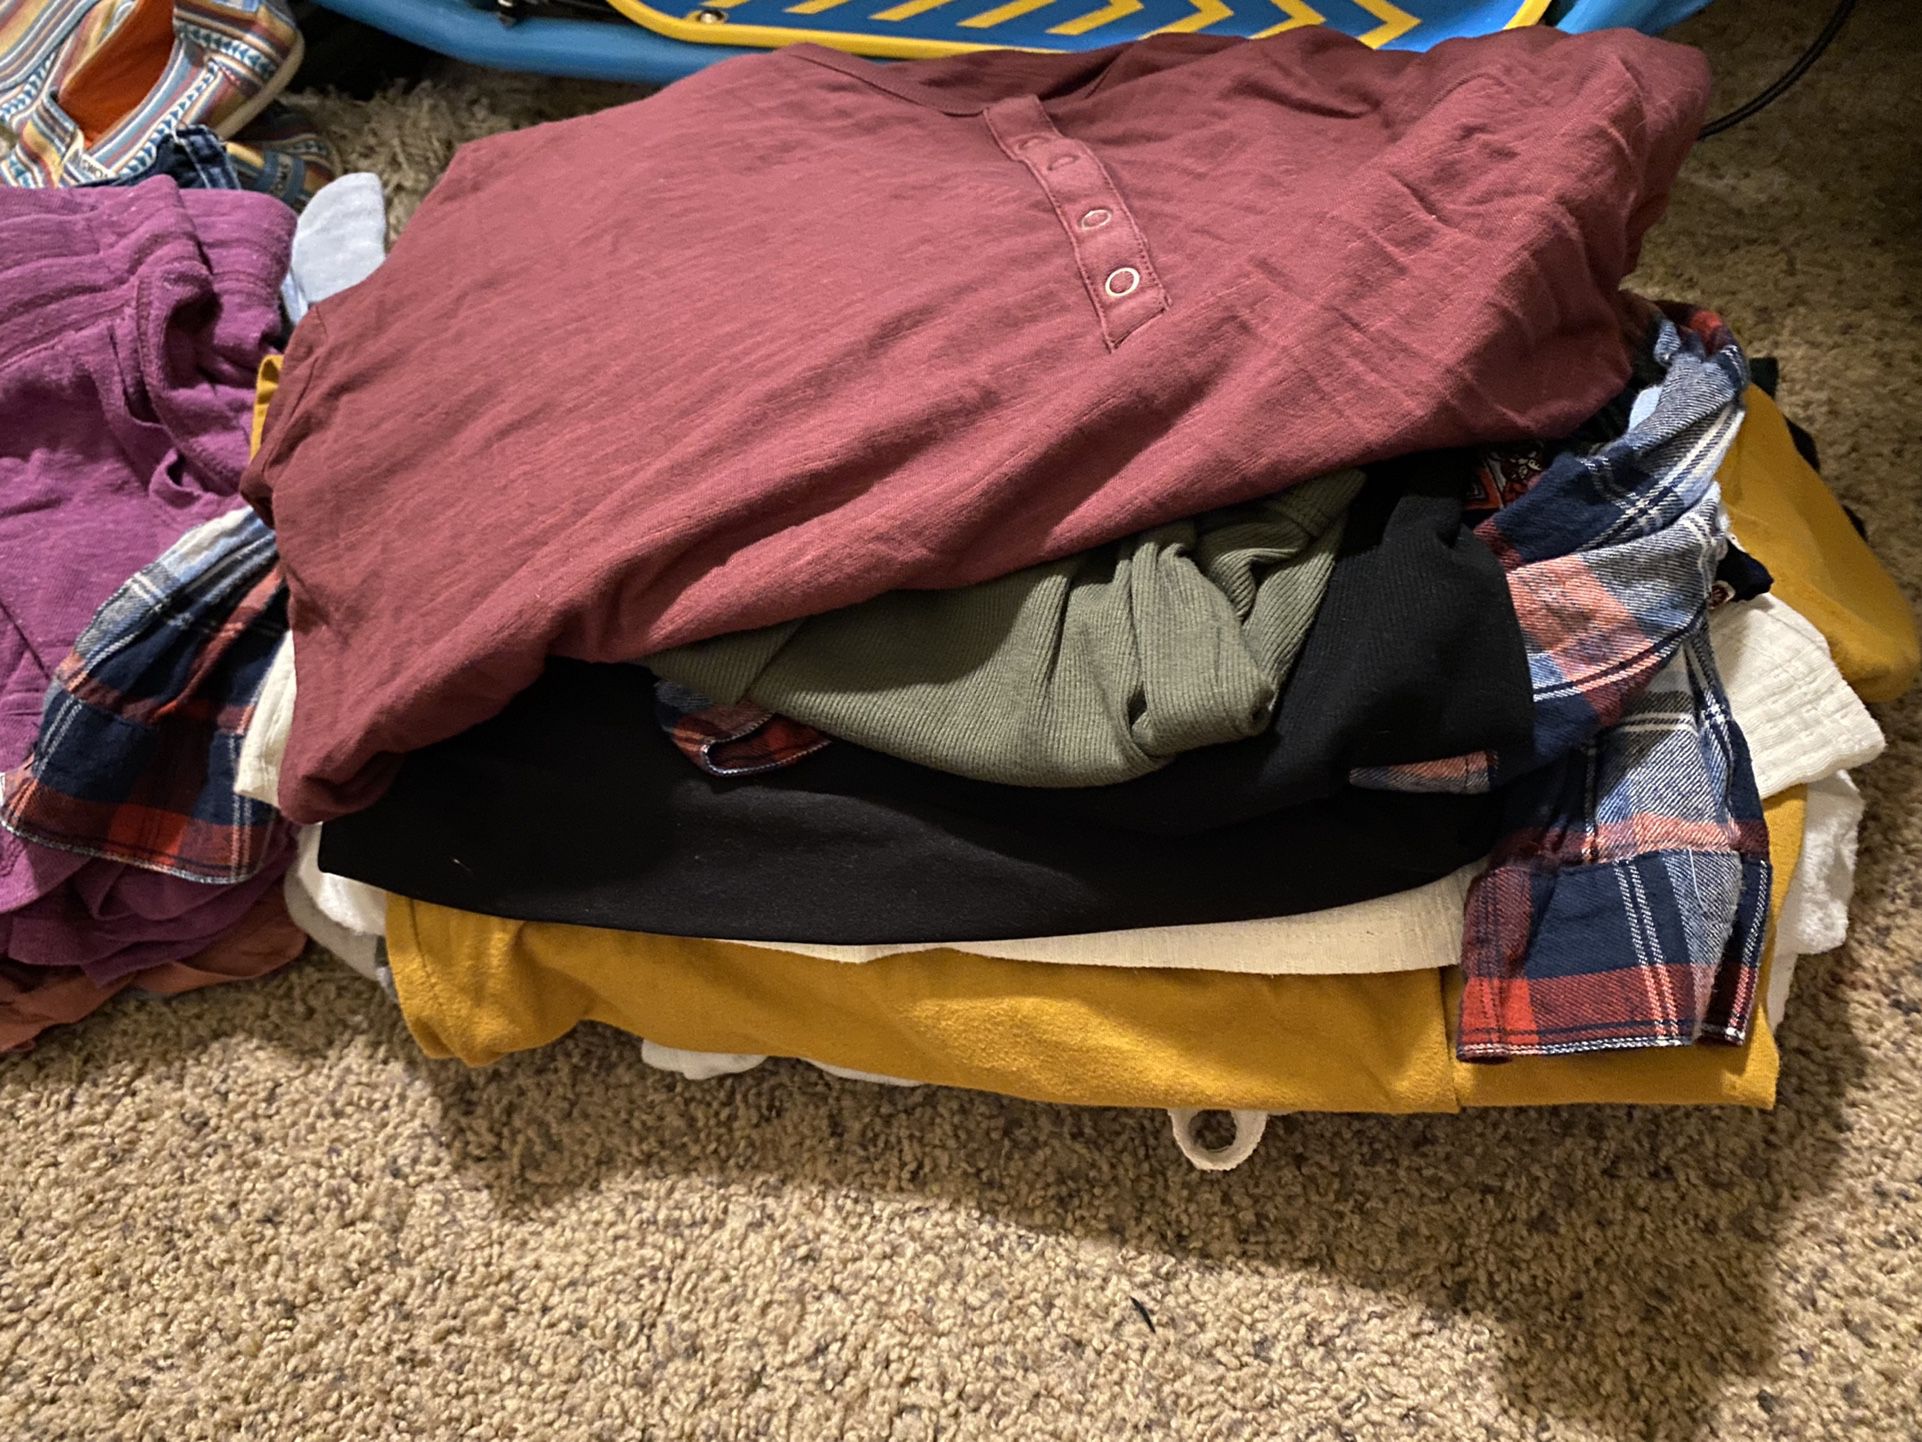 Bag of Clothes